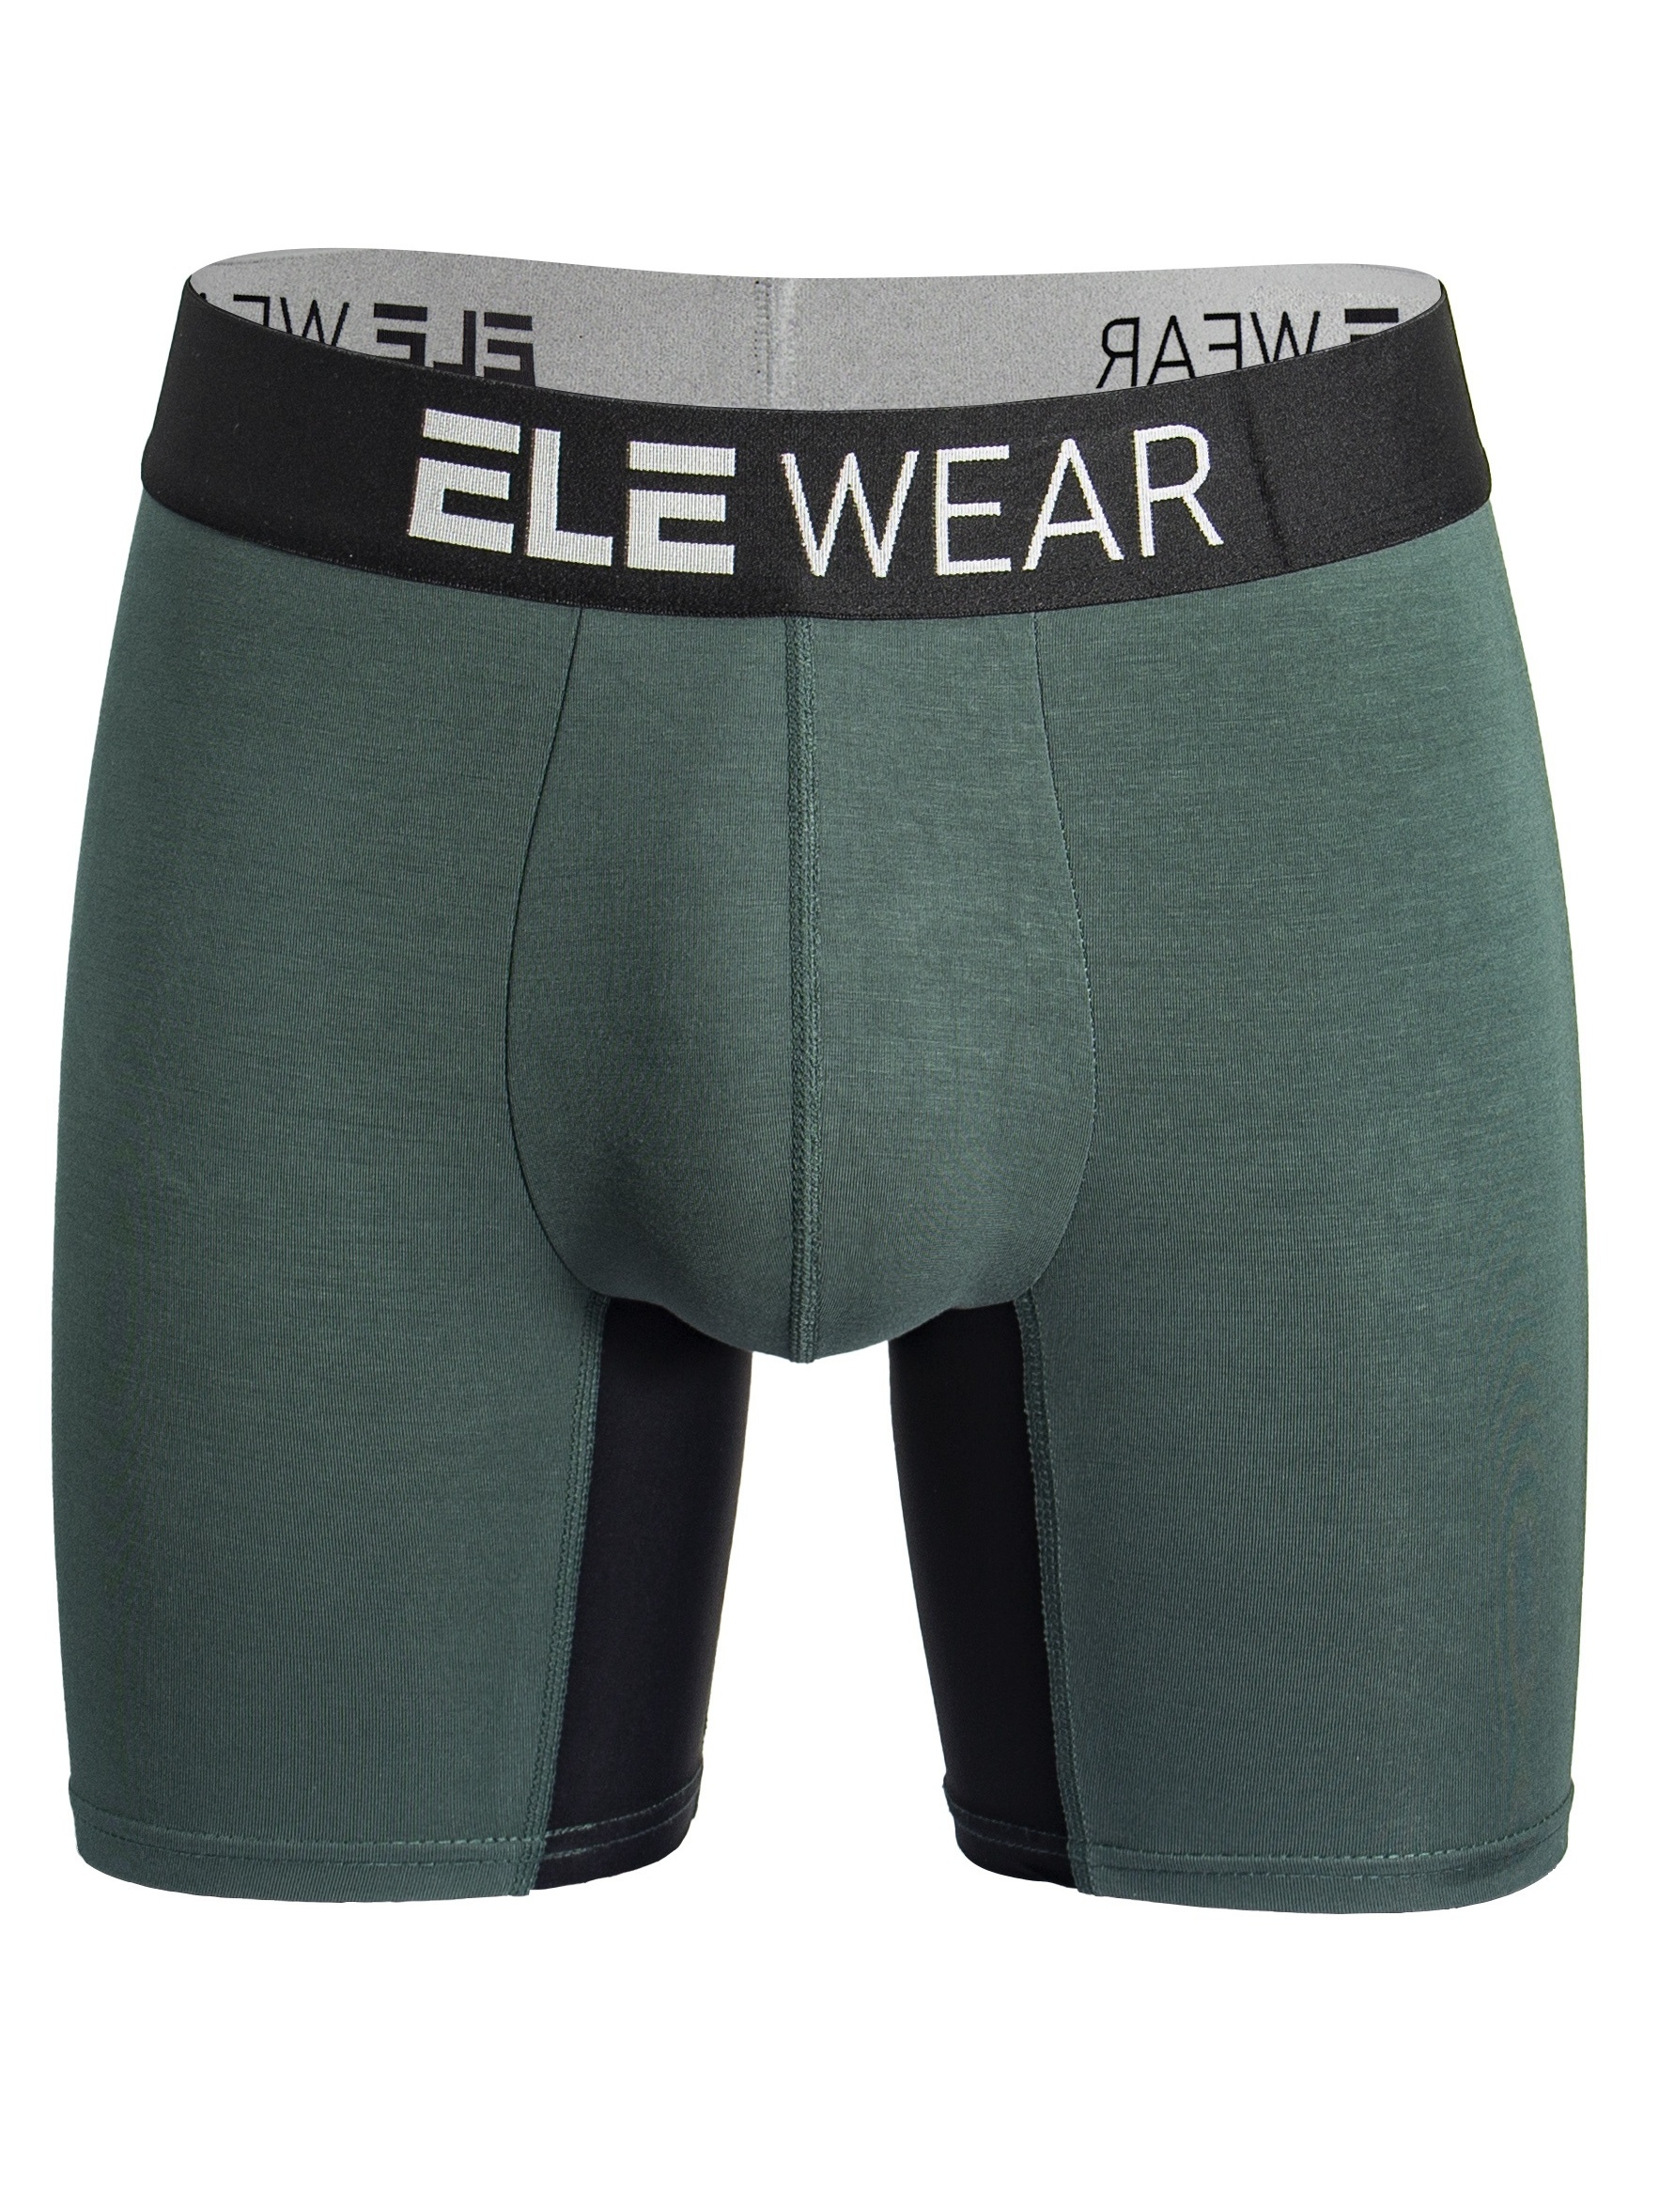 Men's Underwear Boxer Briefs Cool Moisture wicking Slightly - Temu